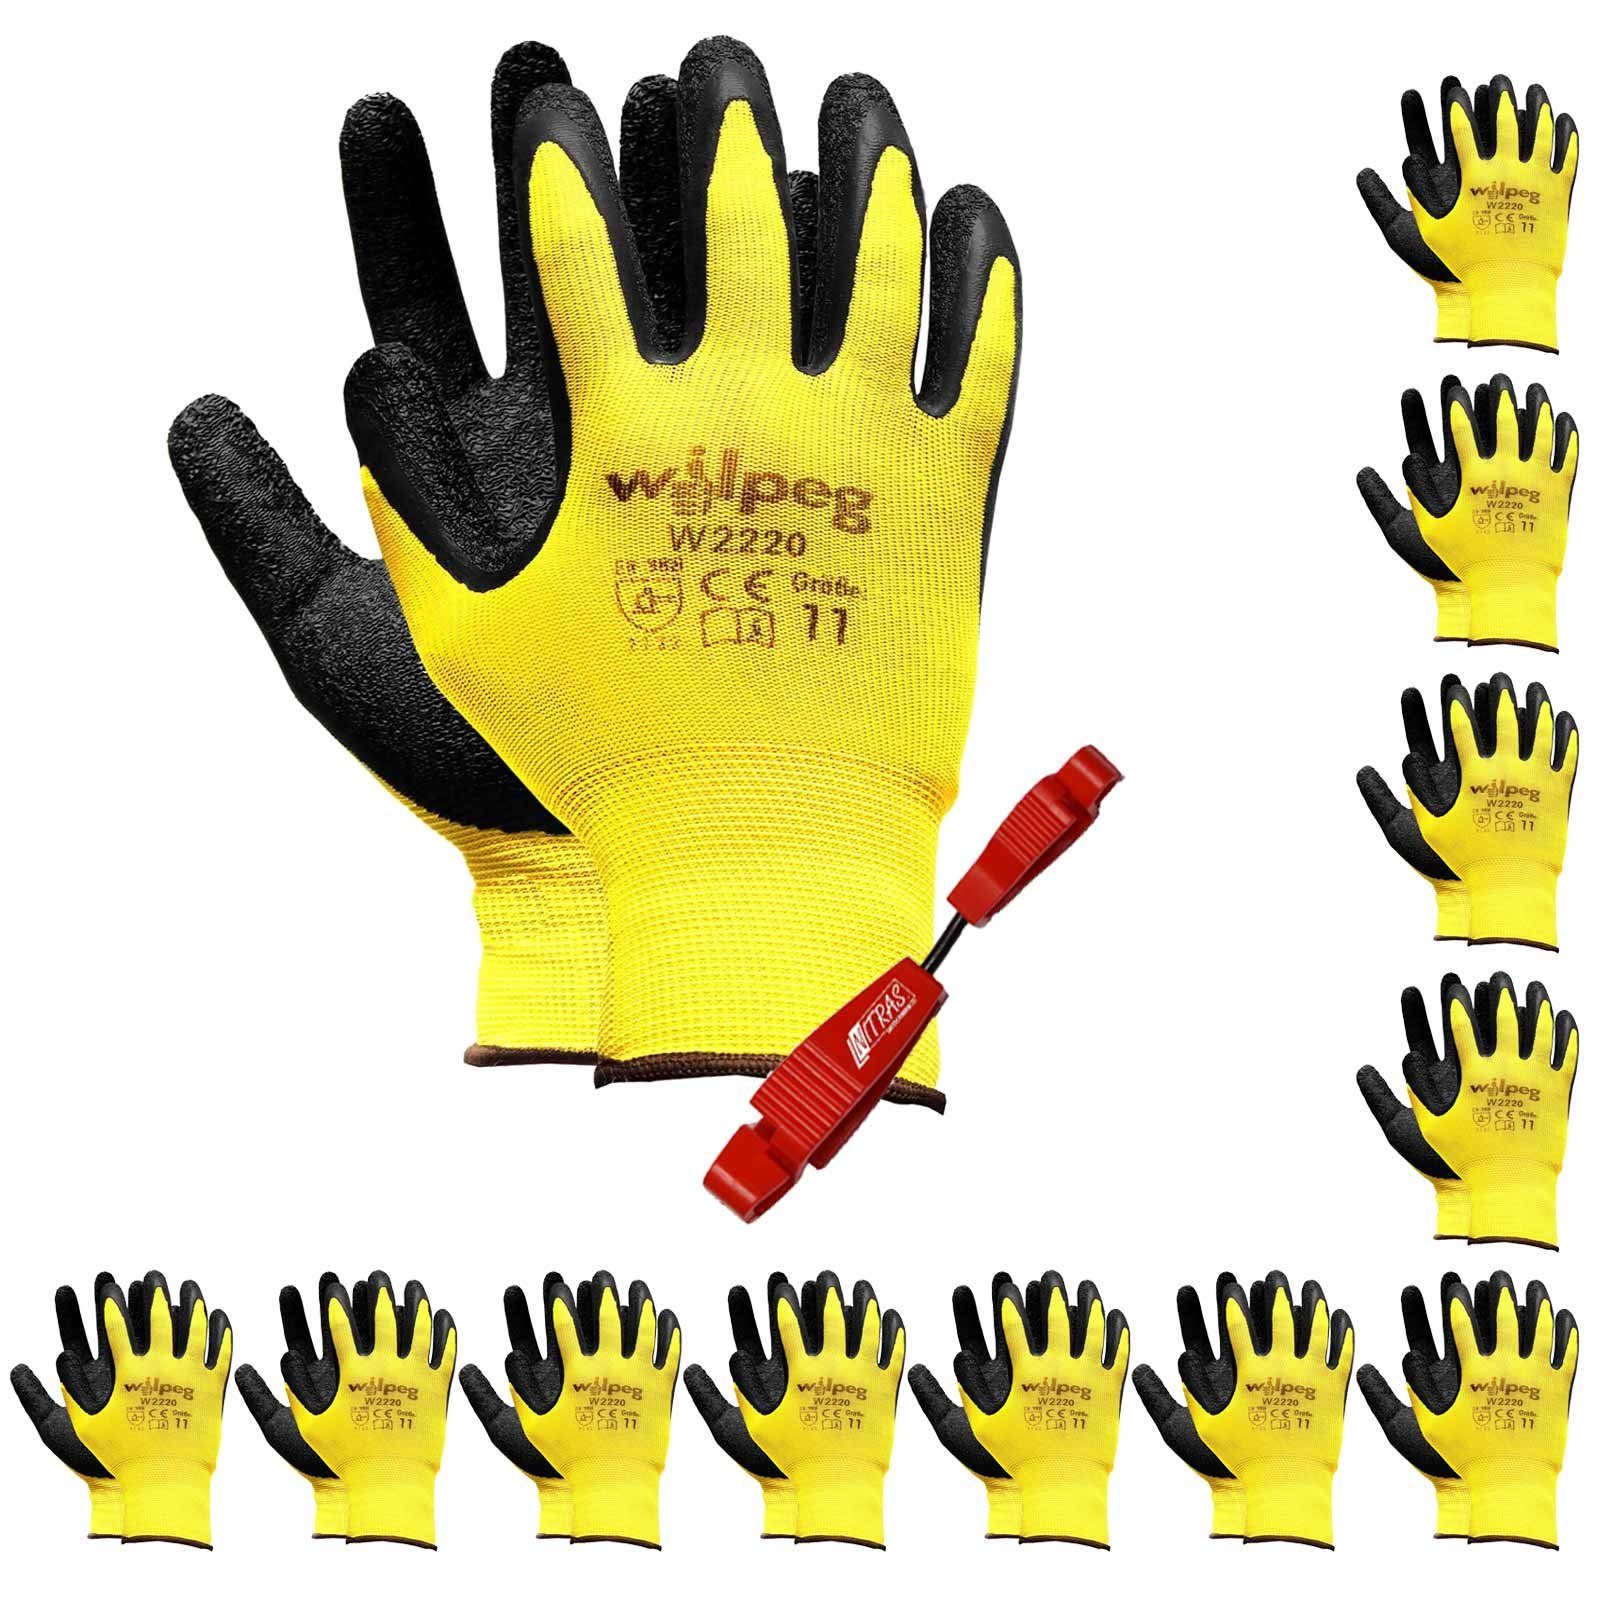 wilpeg® Latexhandschuhe 12 Paar W2220 Nylon-Strickhandschuhe Latex + Handschuh-Clip Set (Spar-Set)